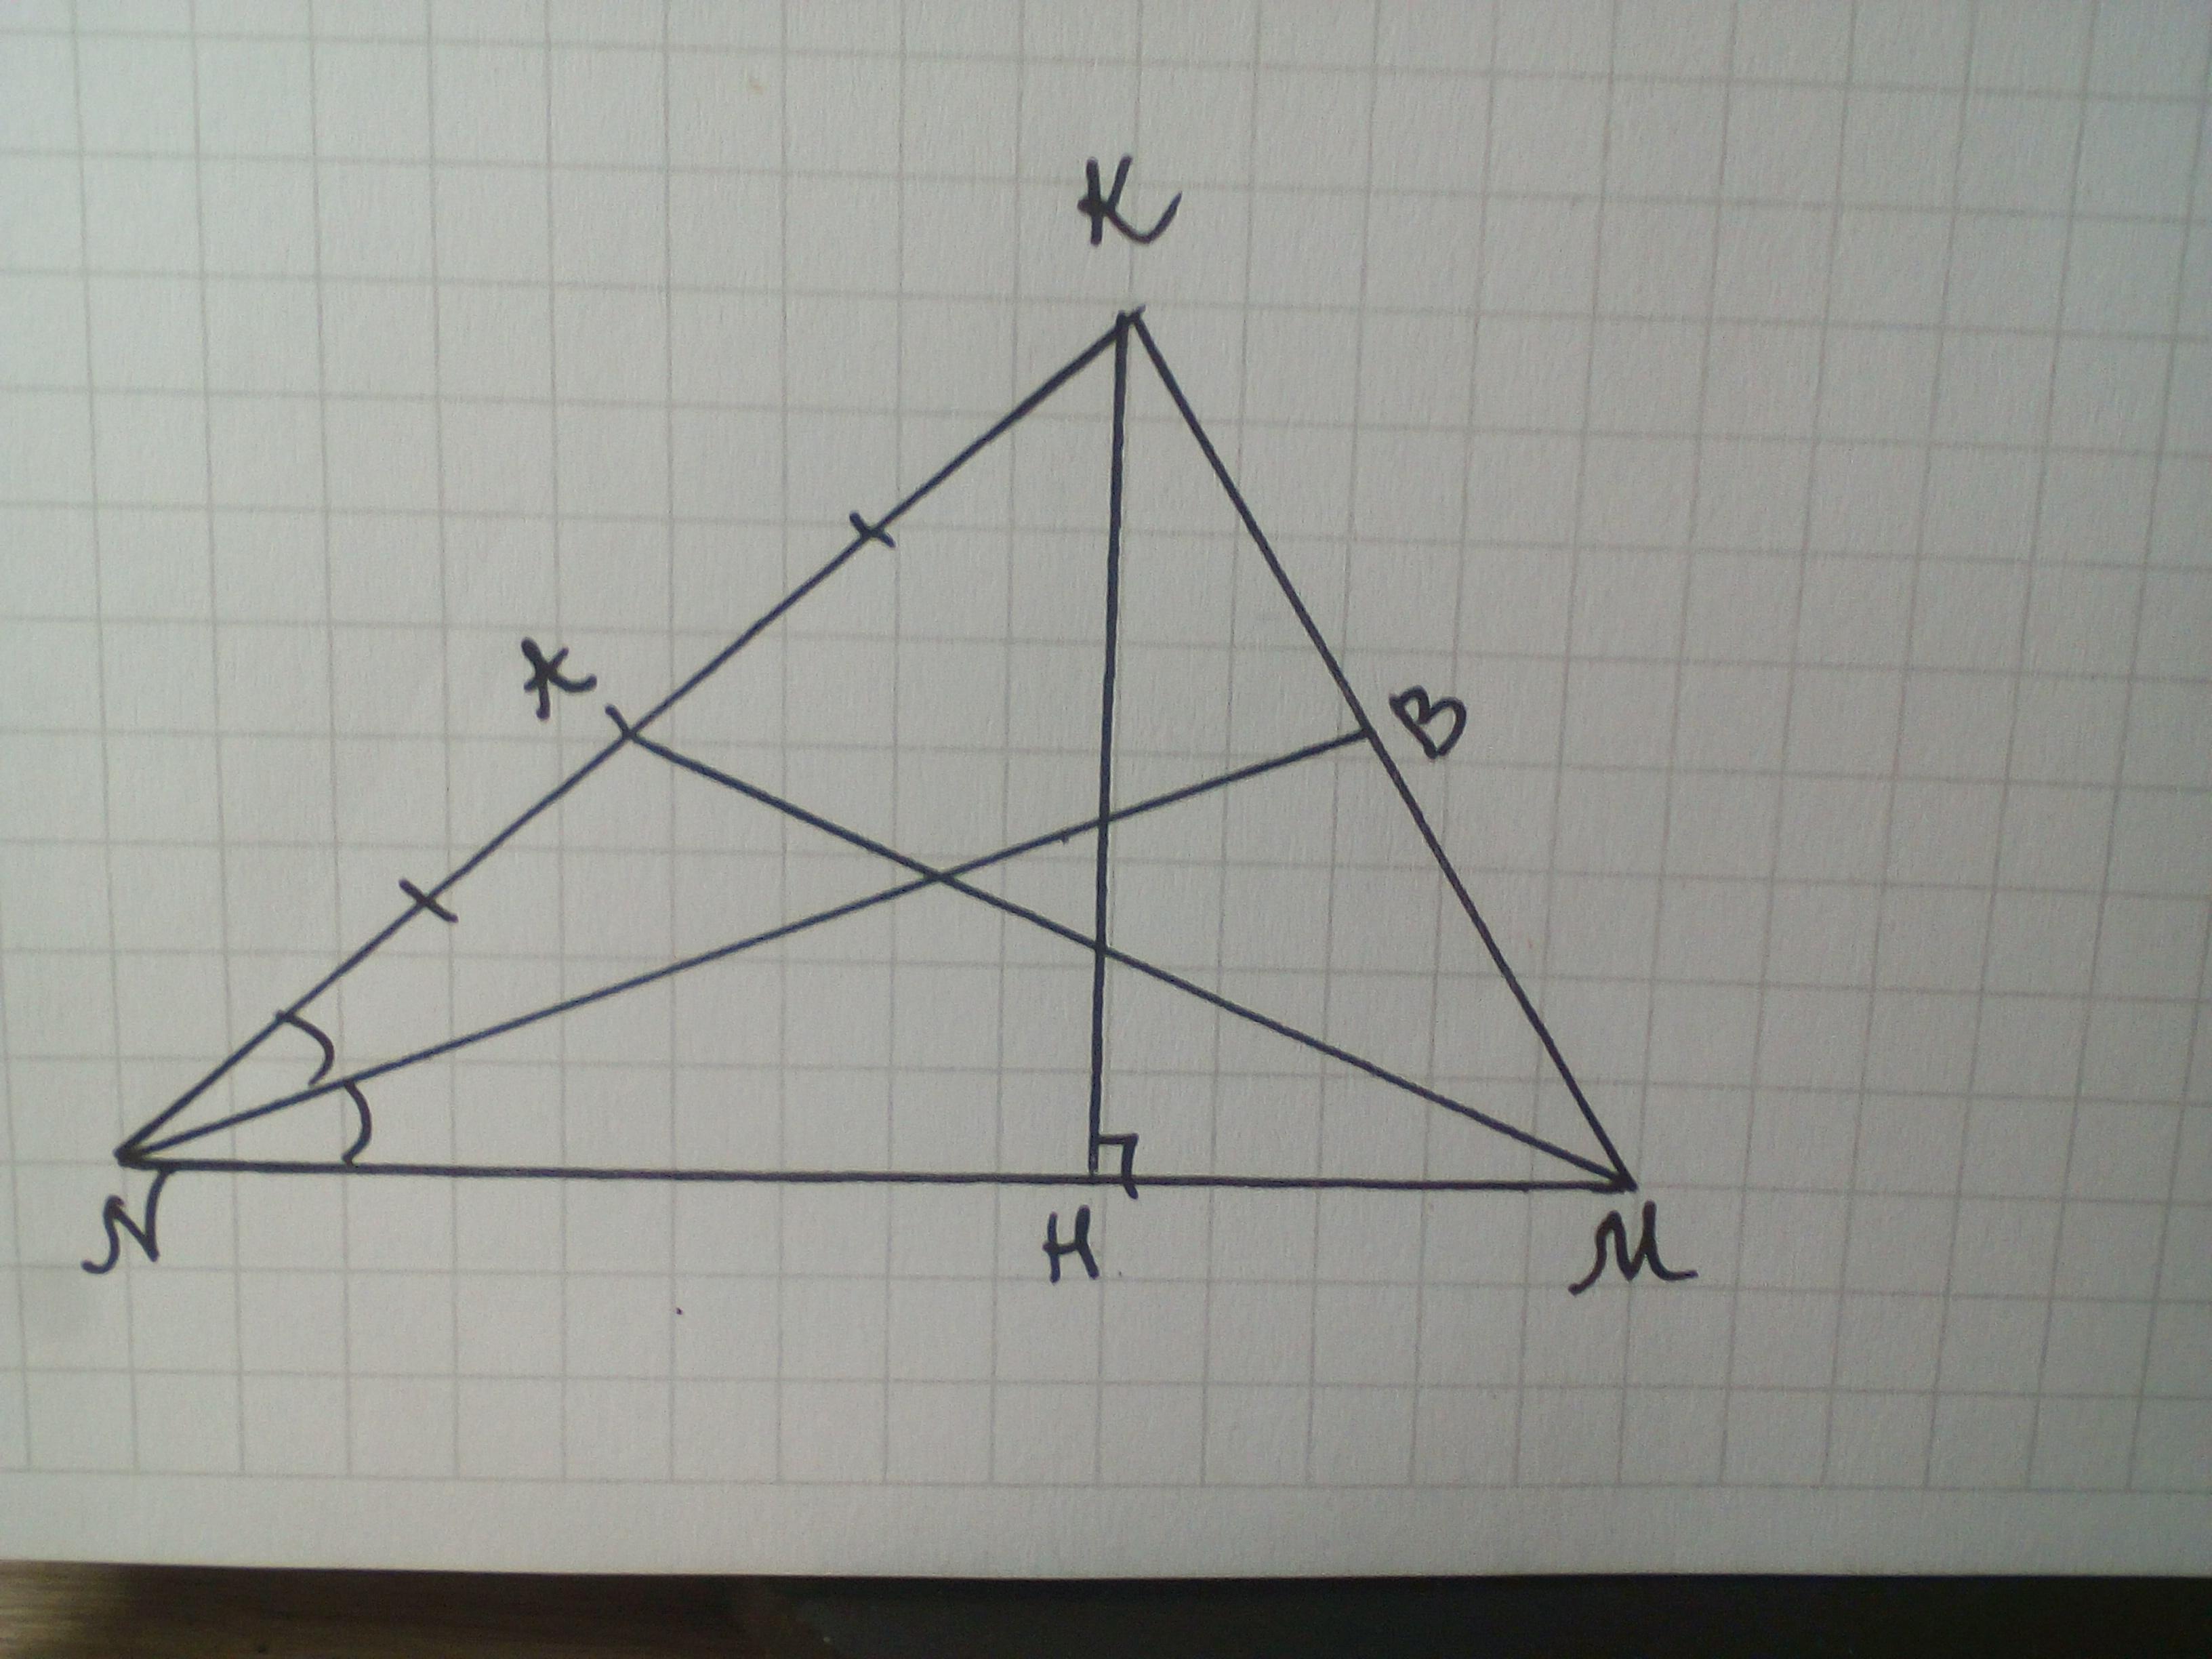 Чертеж тупоугольного треугольника. Медиана остроугольного треугольника. Медиана тупоугольного треугольника. Биссектриса тупоугольного треугольника. Начертить остроугольный треугольник ABC..